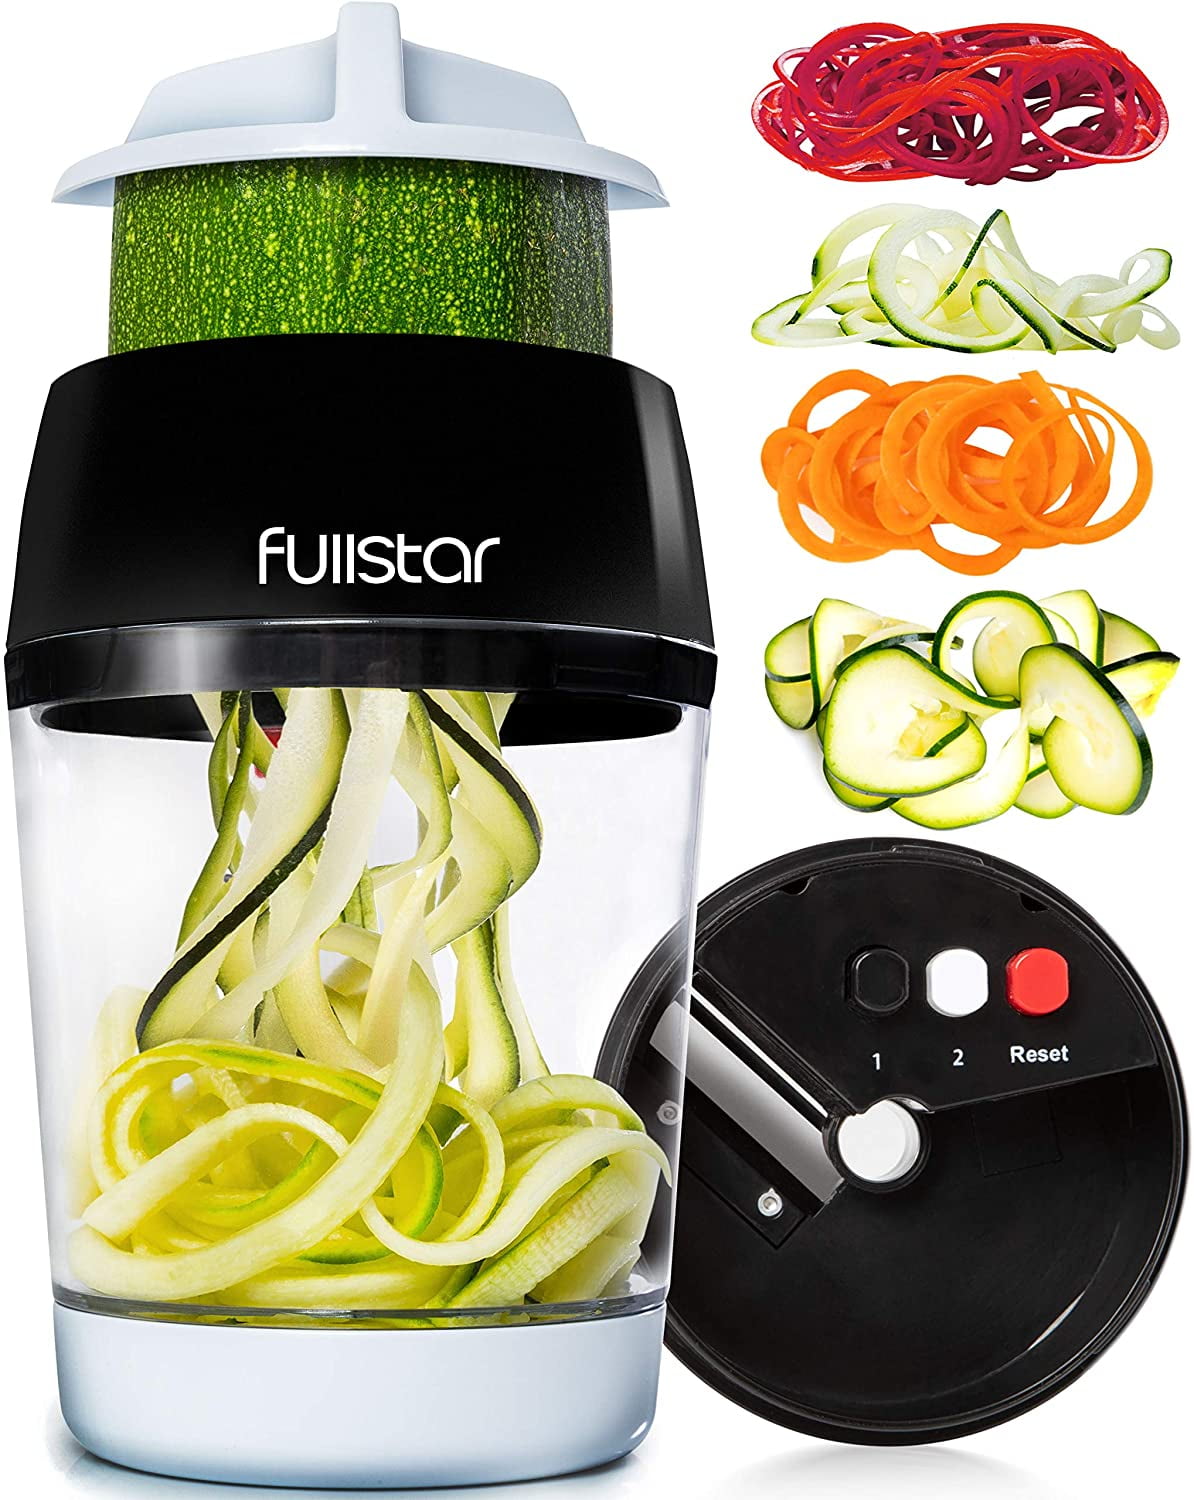 Fullstar - Vegetable Spiralizer, Vegetable Slicer - Zucchini Spaghetti Maker  - 4-in-1 